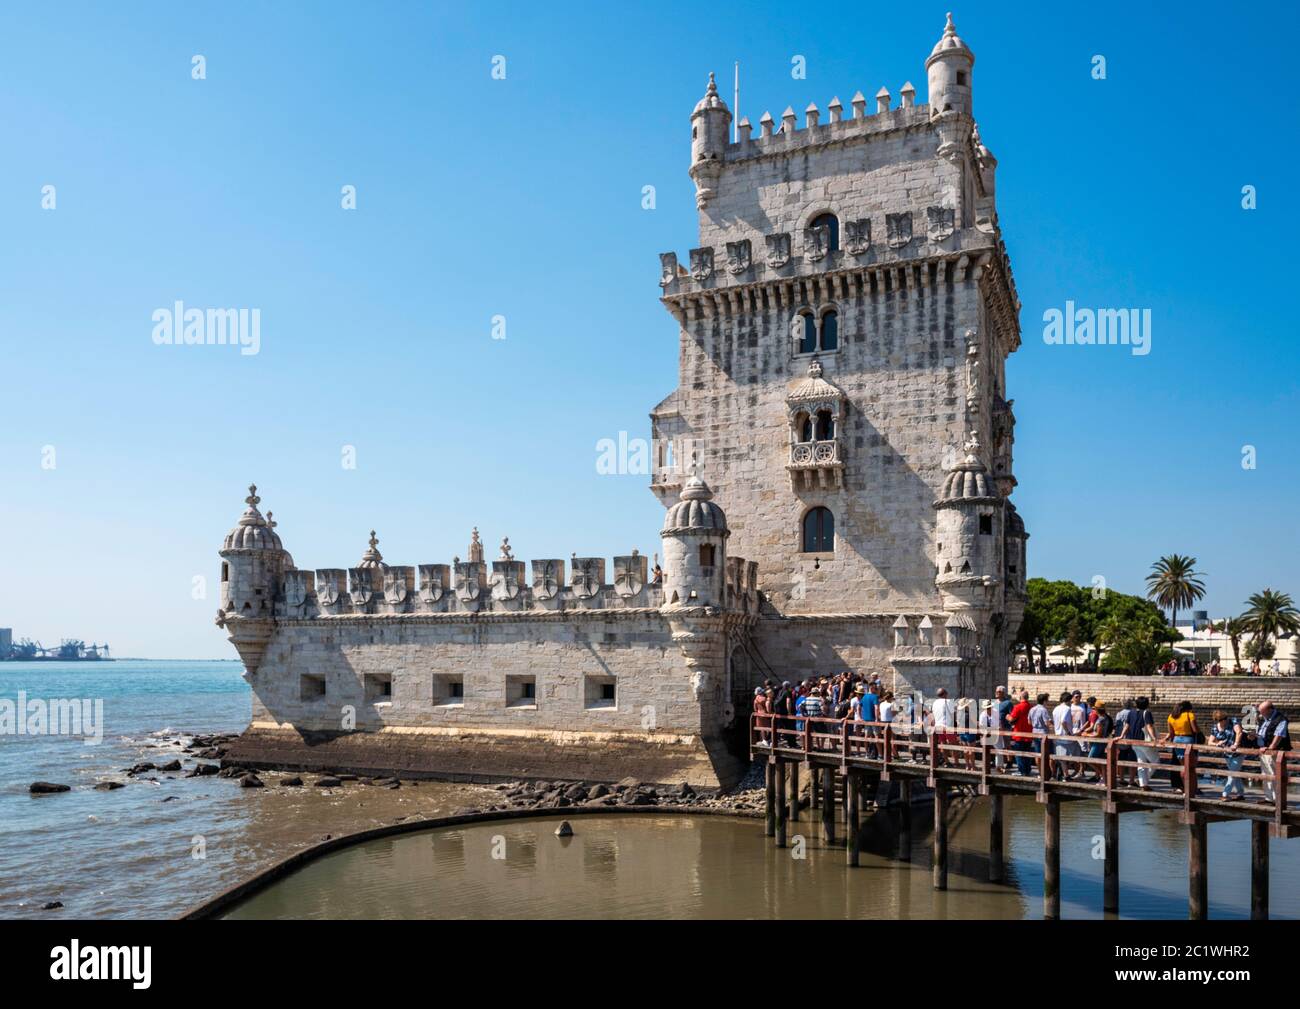 Der Belém-Turm ('Torre de Belém') ist eine Festung aus dem 16. Jahrhundert im portugiesischen manuelinischen Stil am Tejo in Belém, Lissabon, Portugal Stockfoto